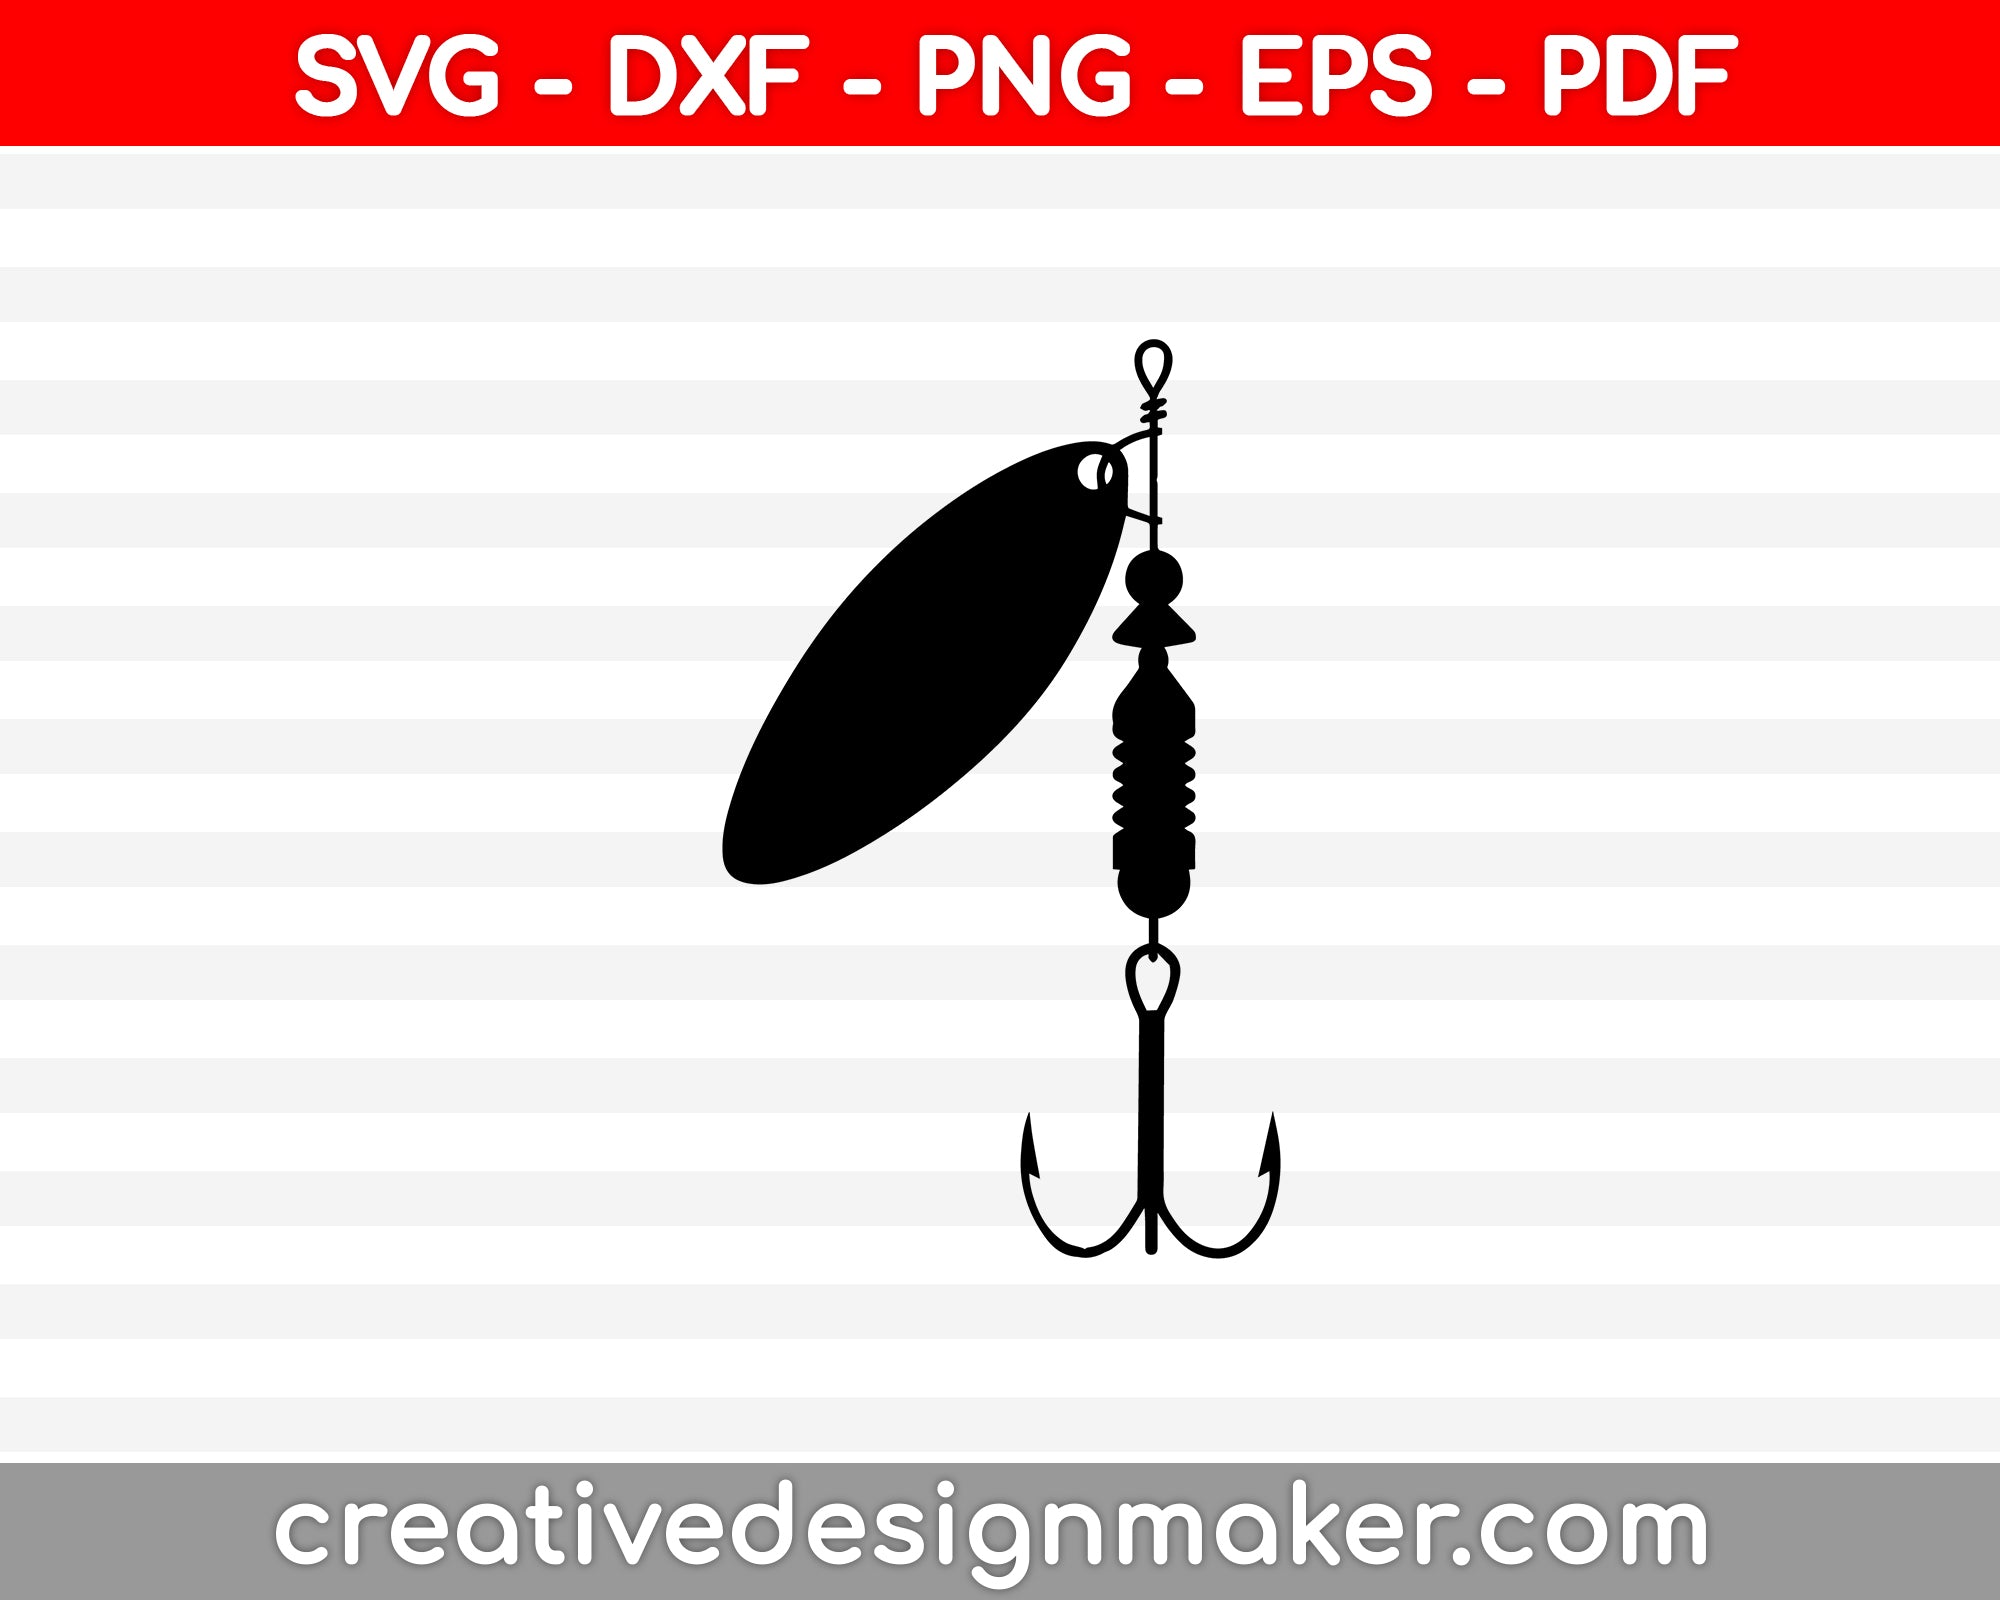 Master baiter fishing hook digital design - adult humor SVG PDF PNG